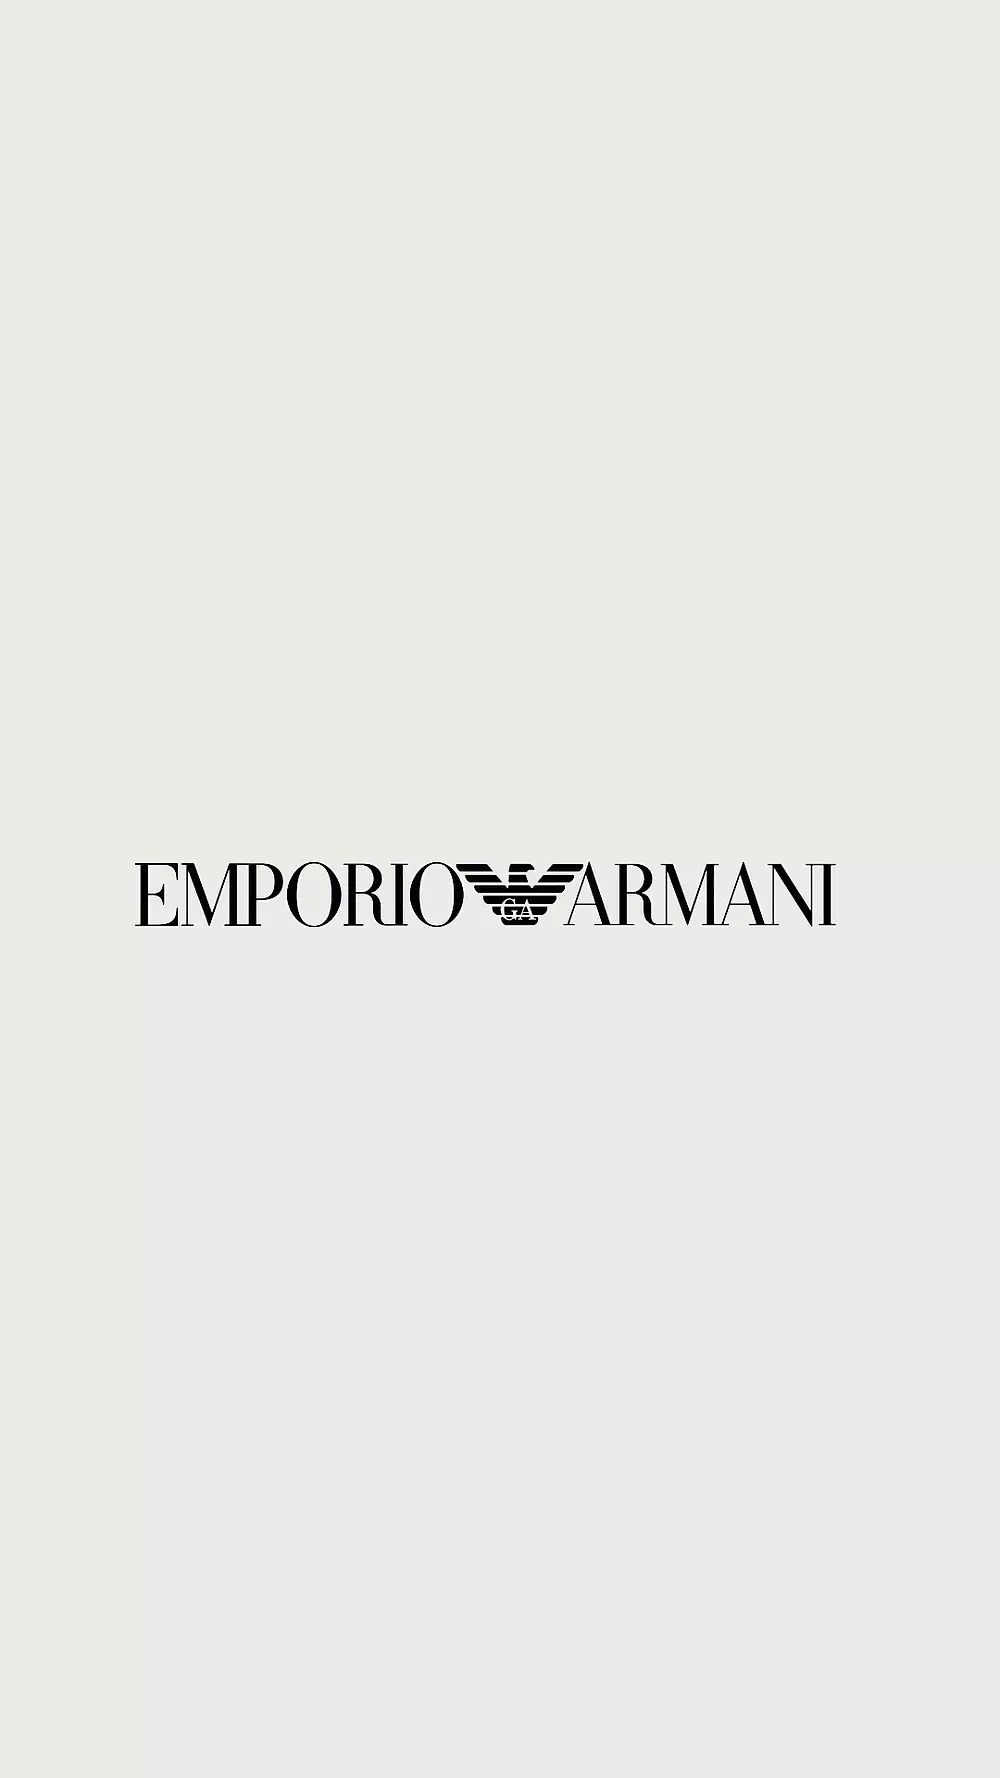 Customized accessories for a unique style - Emporio Armani